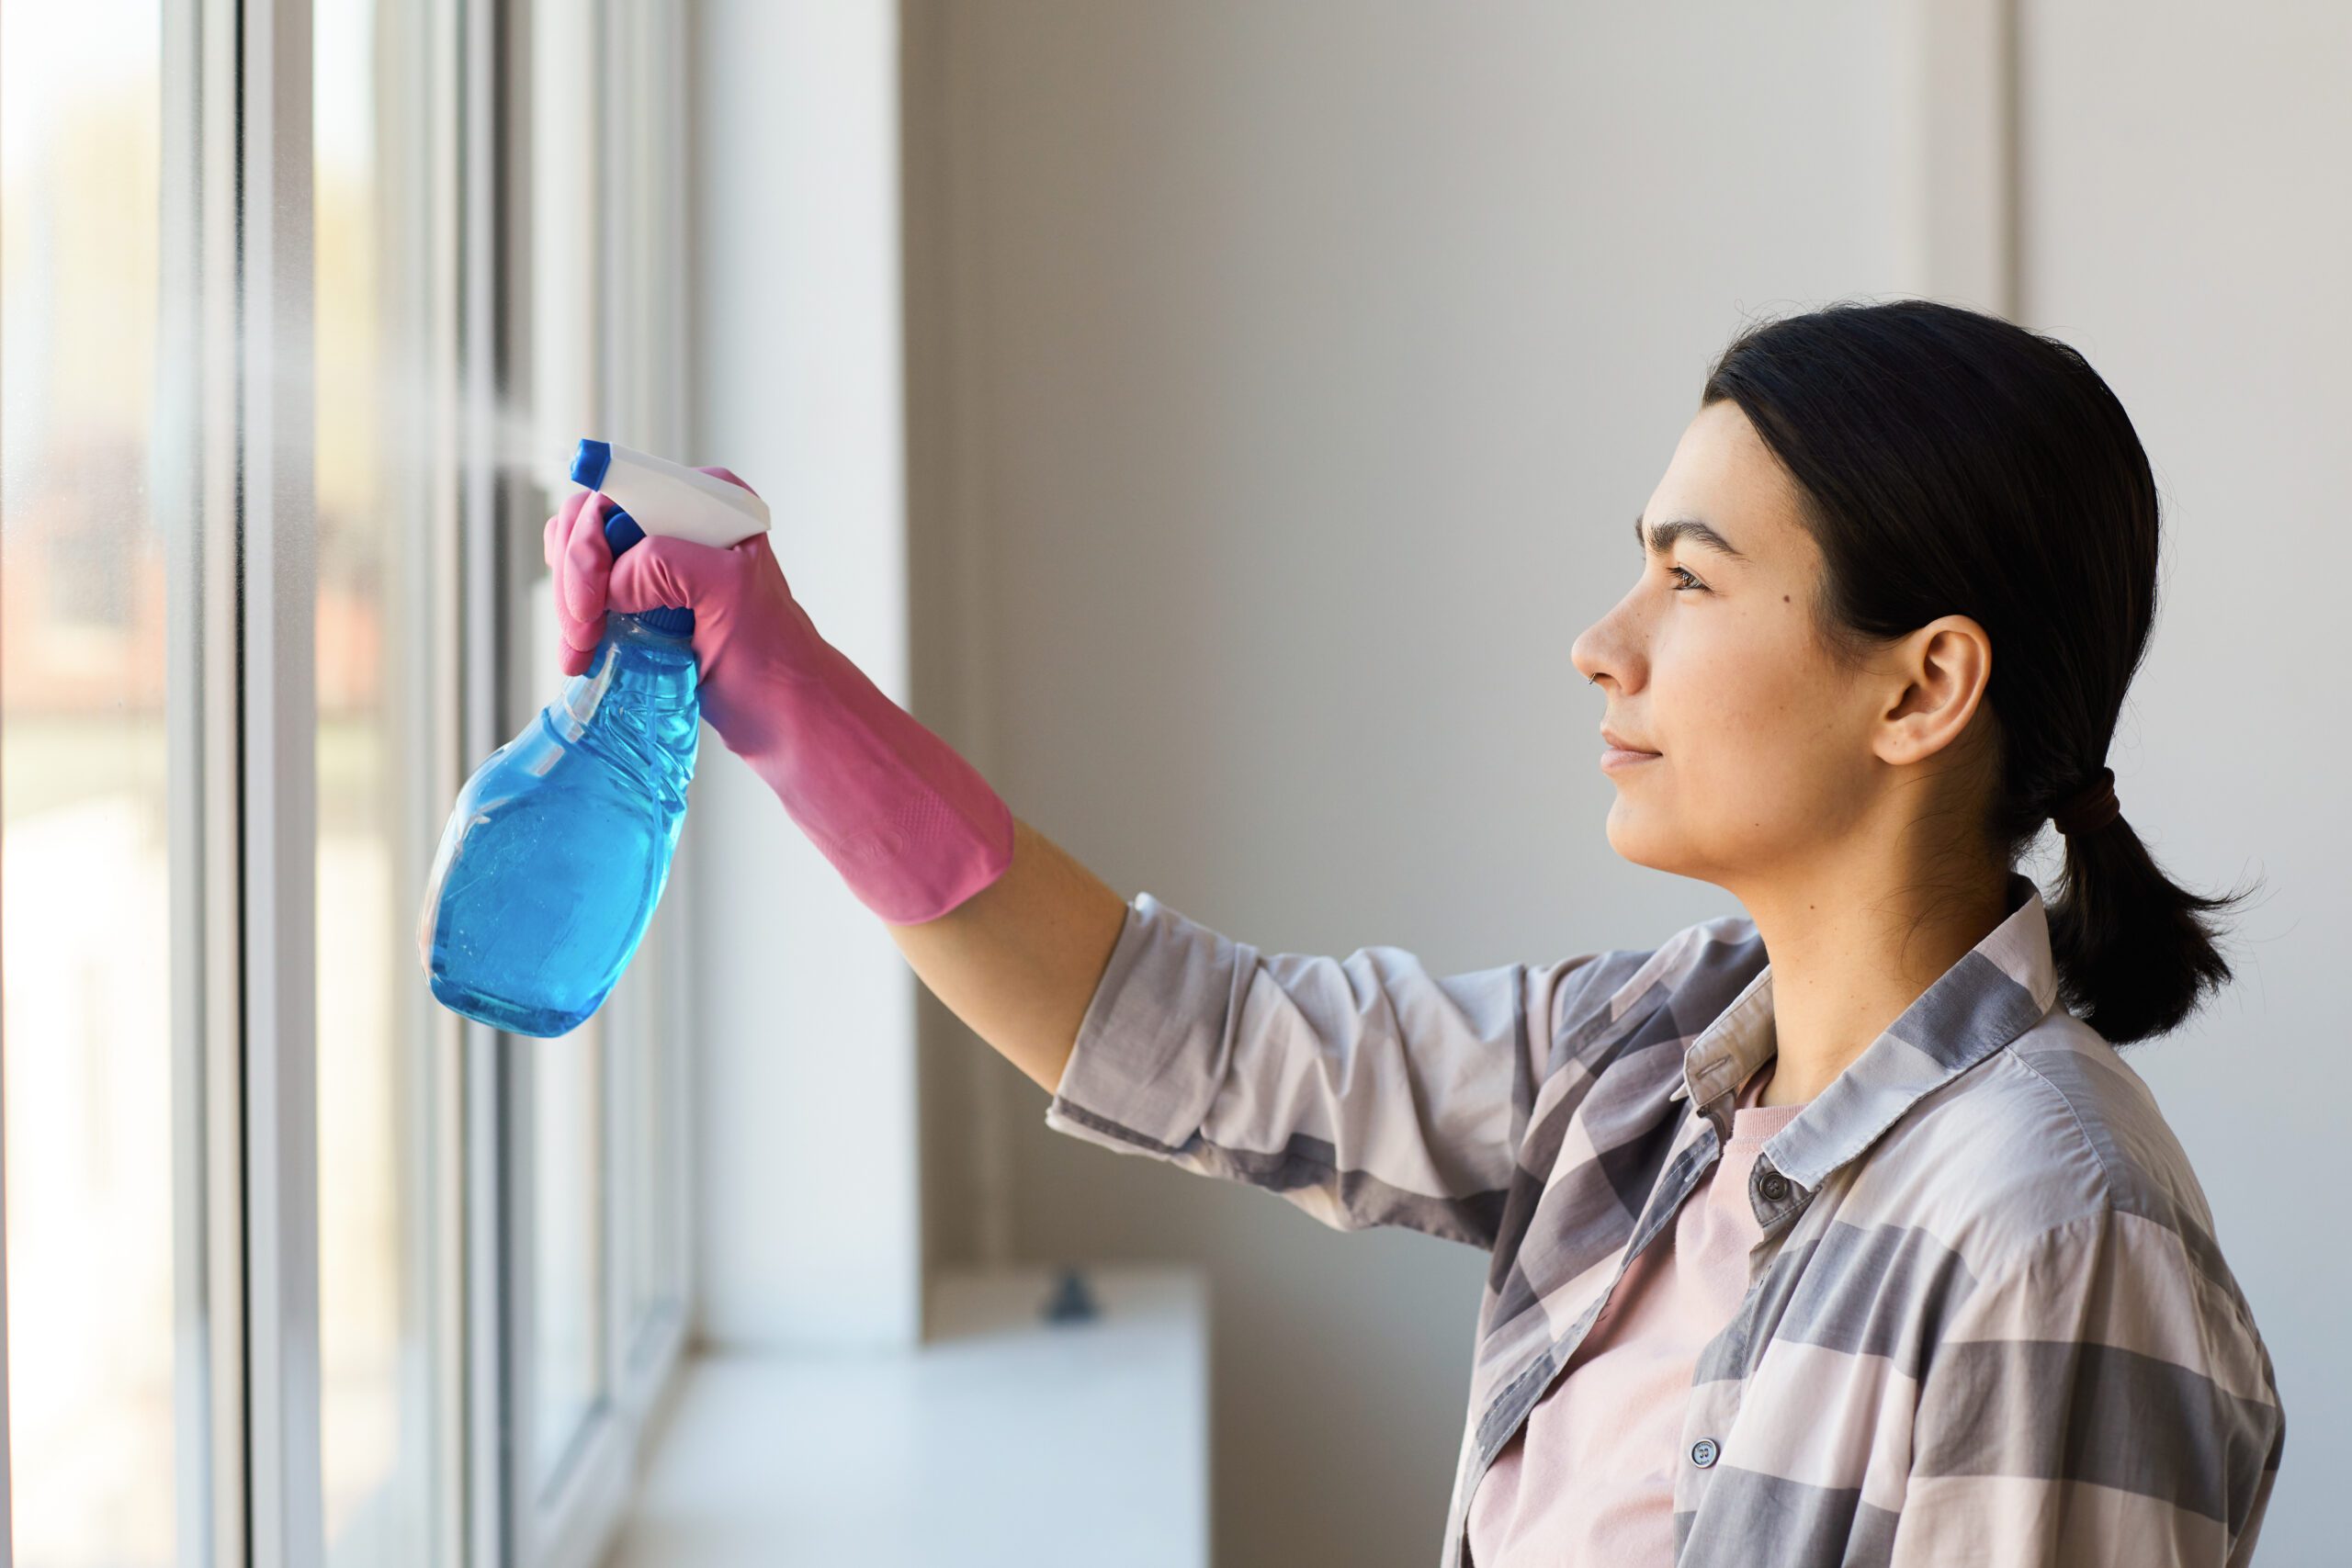 Jak cieszyć się czystymi oknami, bez wysiłku? Zamów mycie okien, mycie szyb w aplikacji SeniorApp. Oferujemy mycie okien w całej Polsce.